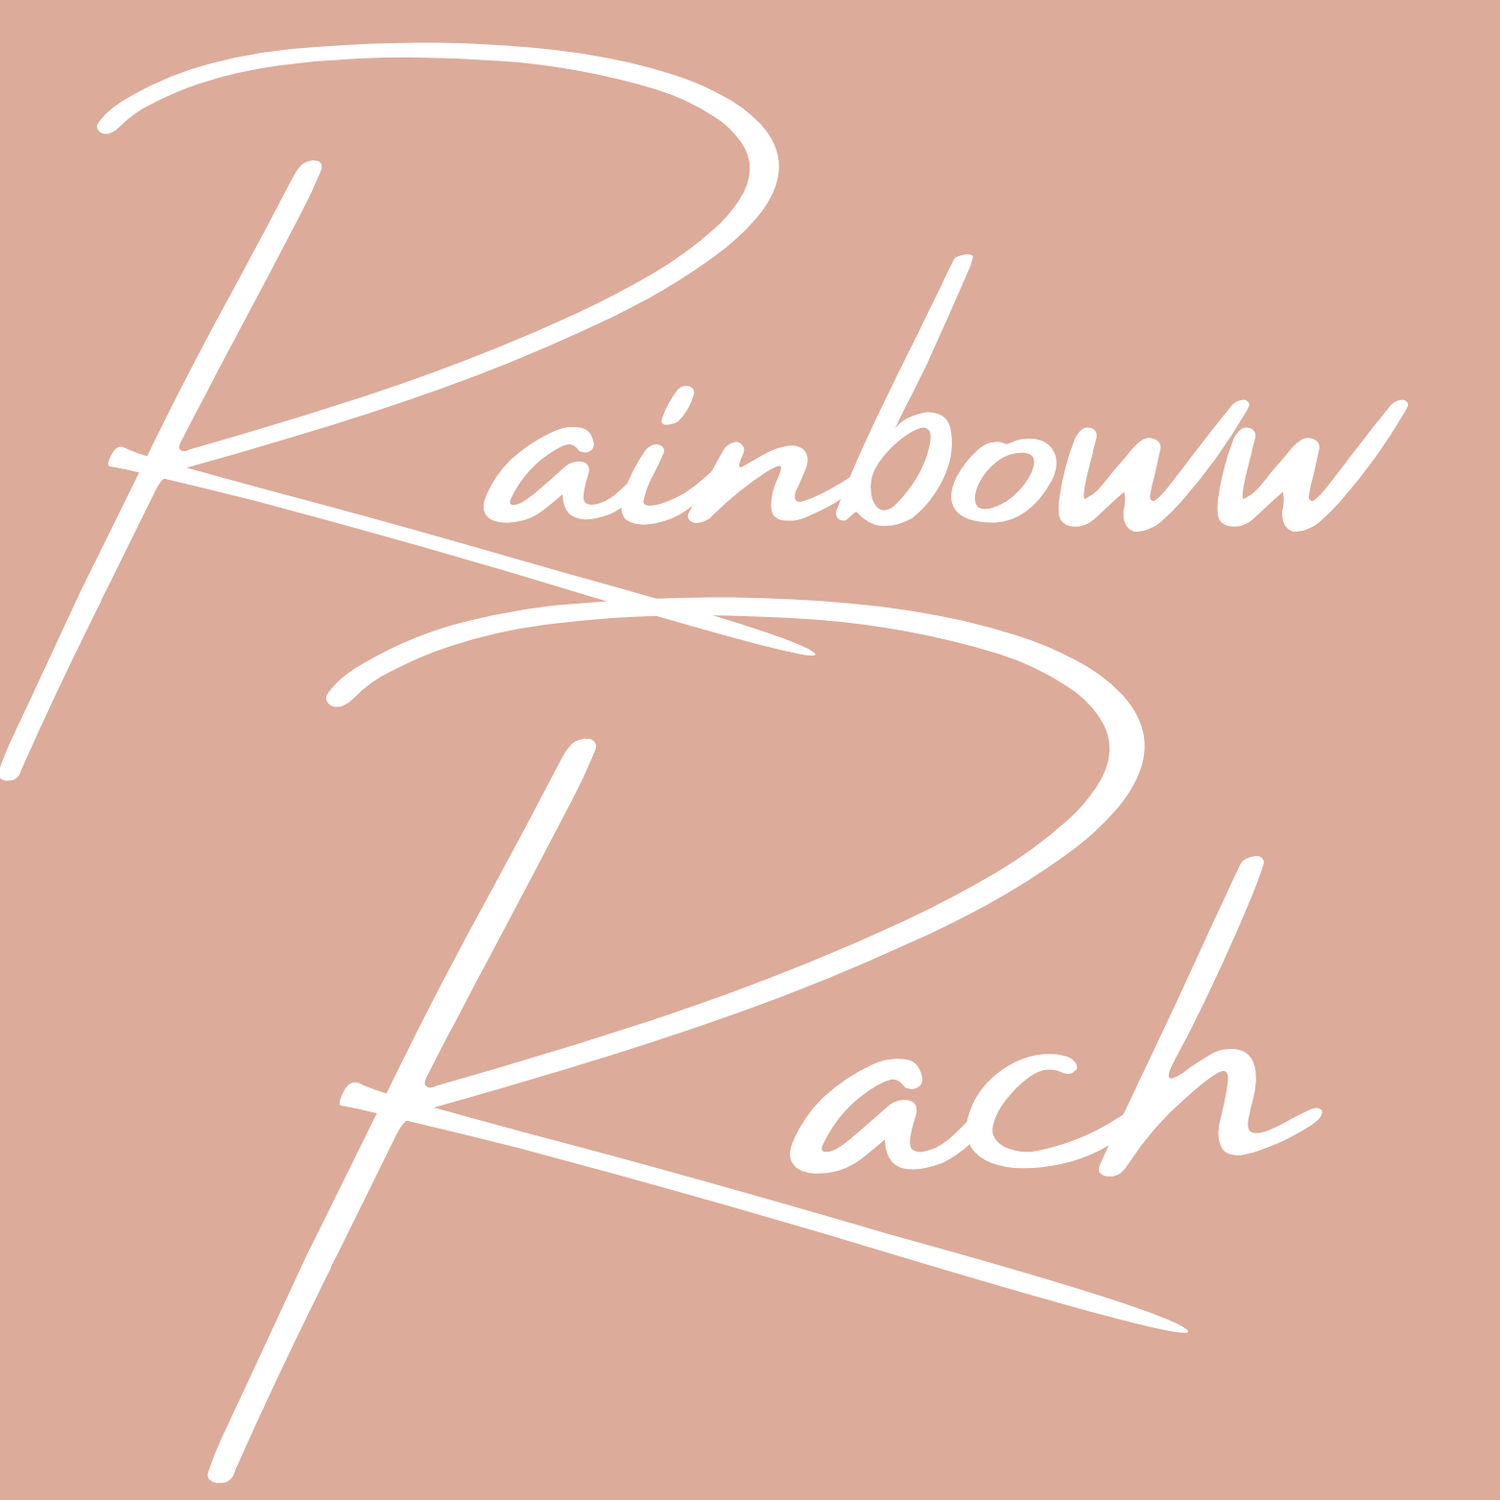 Rainboww Rach